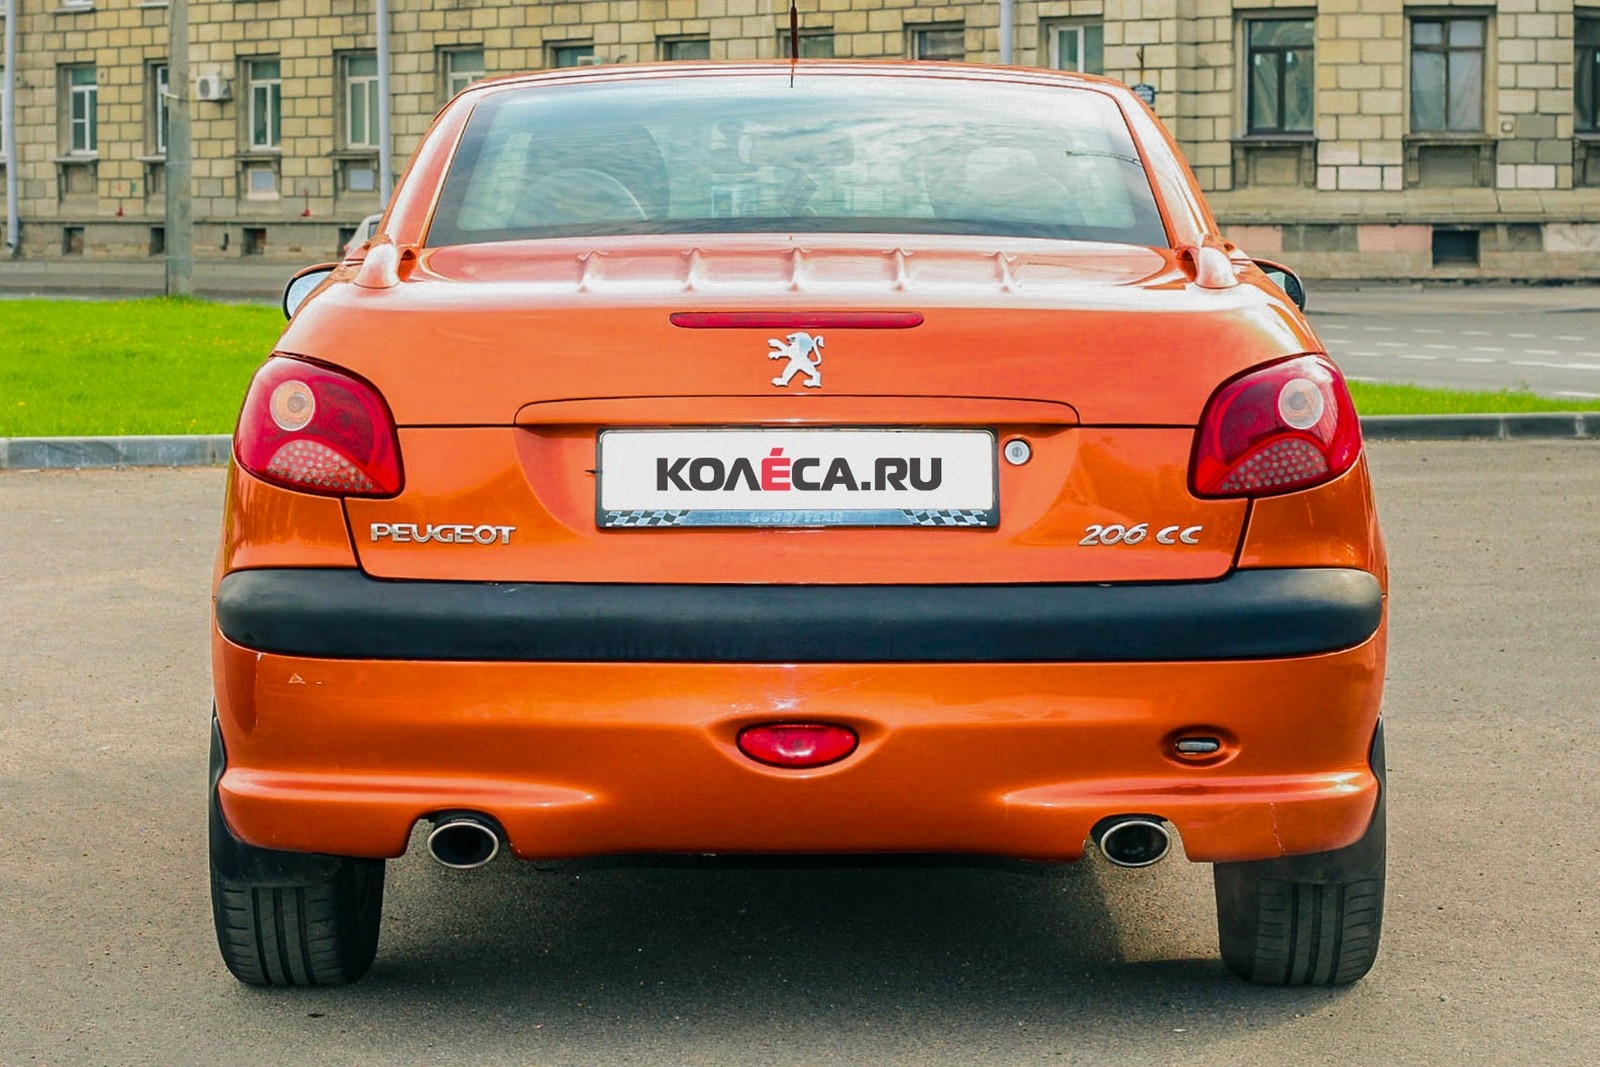 Peugeot 206 СС оранжевый сзади (4)